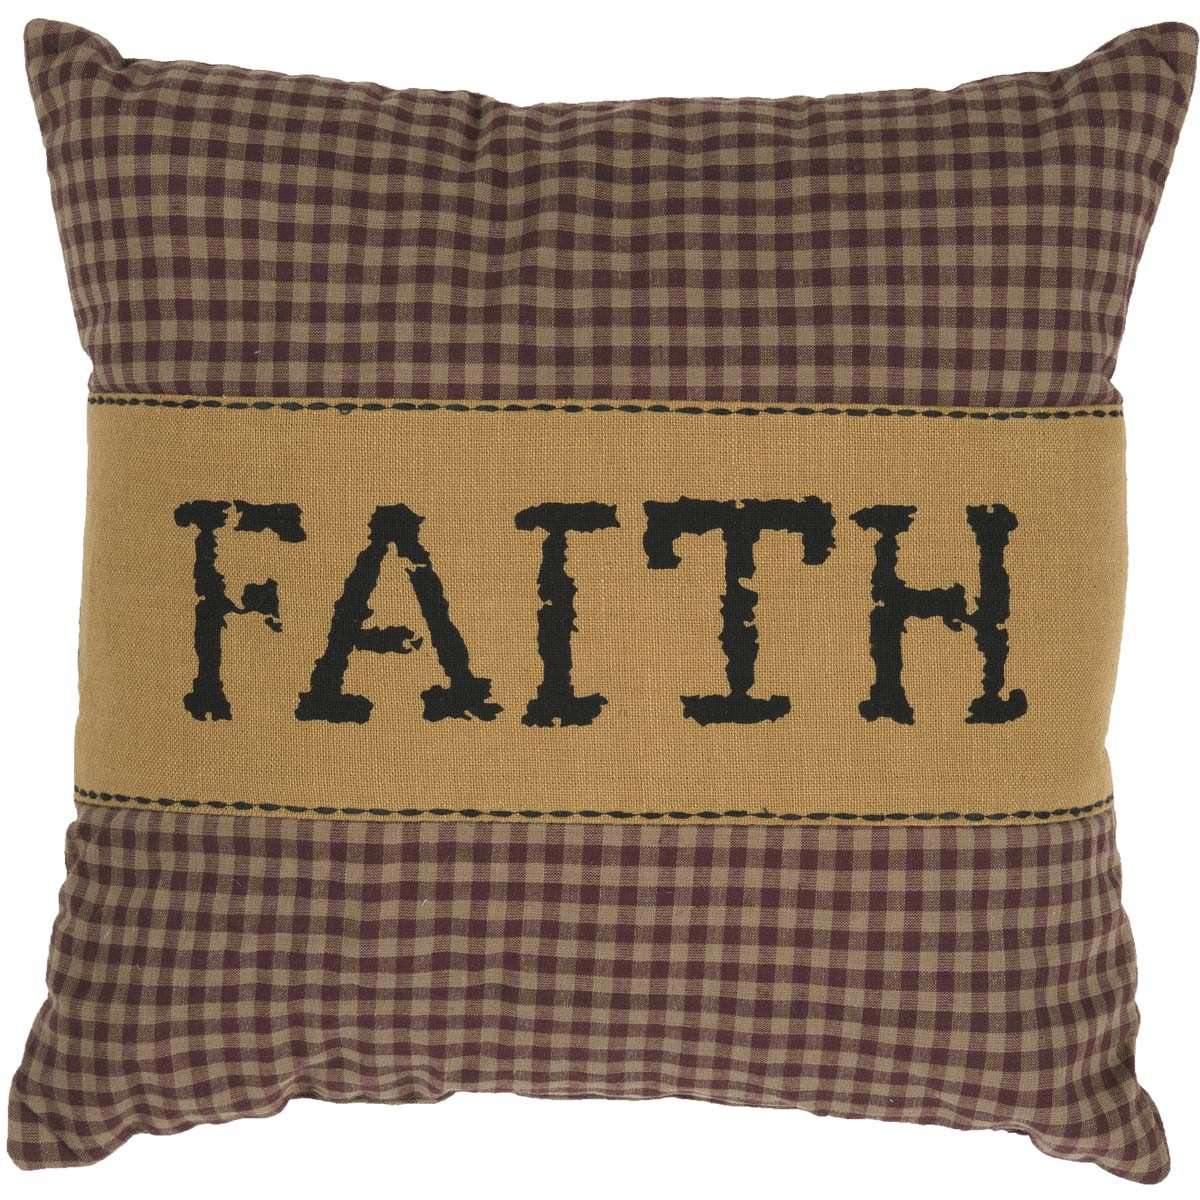 Heritage Farms Faith Pillow 12x12 - The Fox Decor